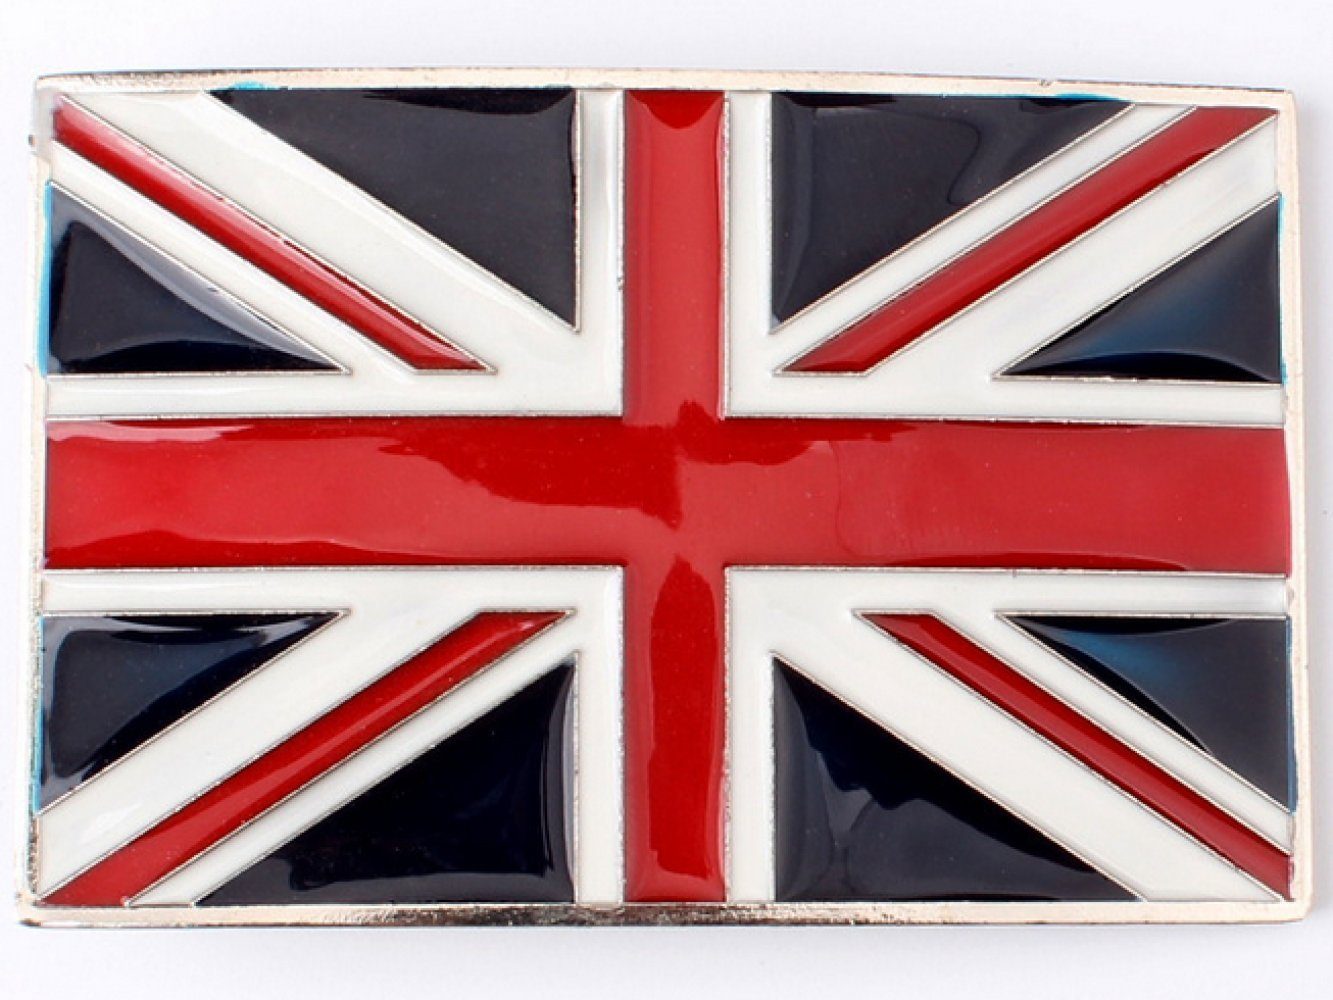 Fahne Wechselschnalle Welt Jack Gürtelschließe Union Buckle England aller aus Ware Gürtelschnalle Banner